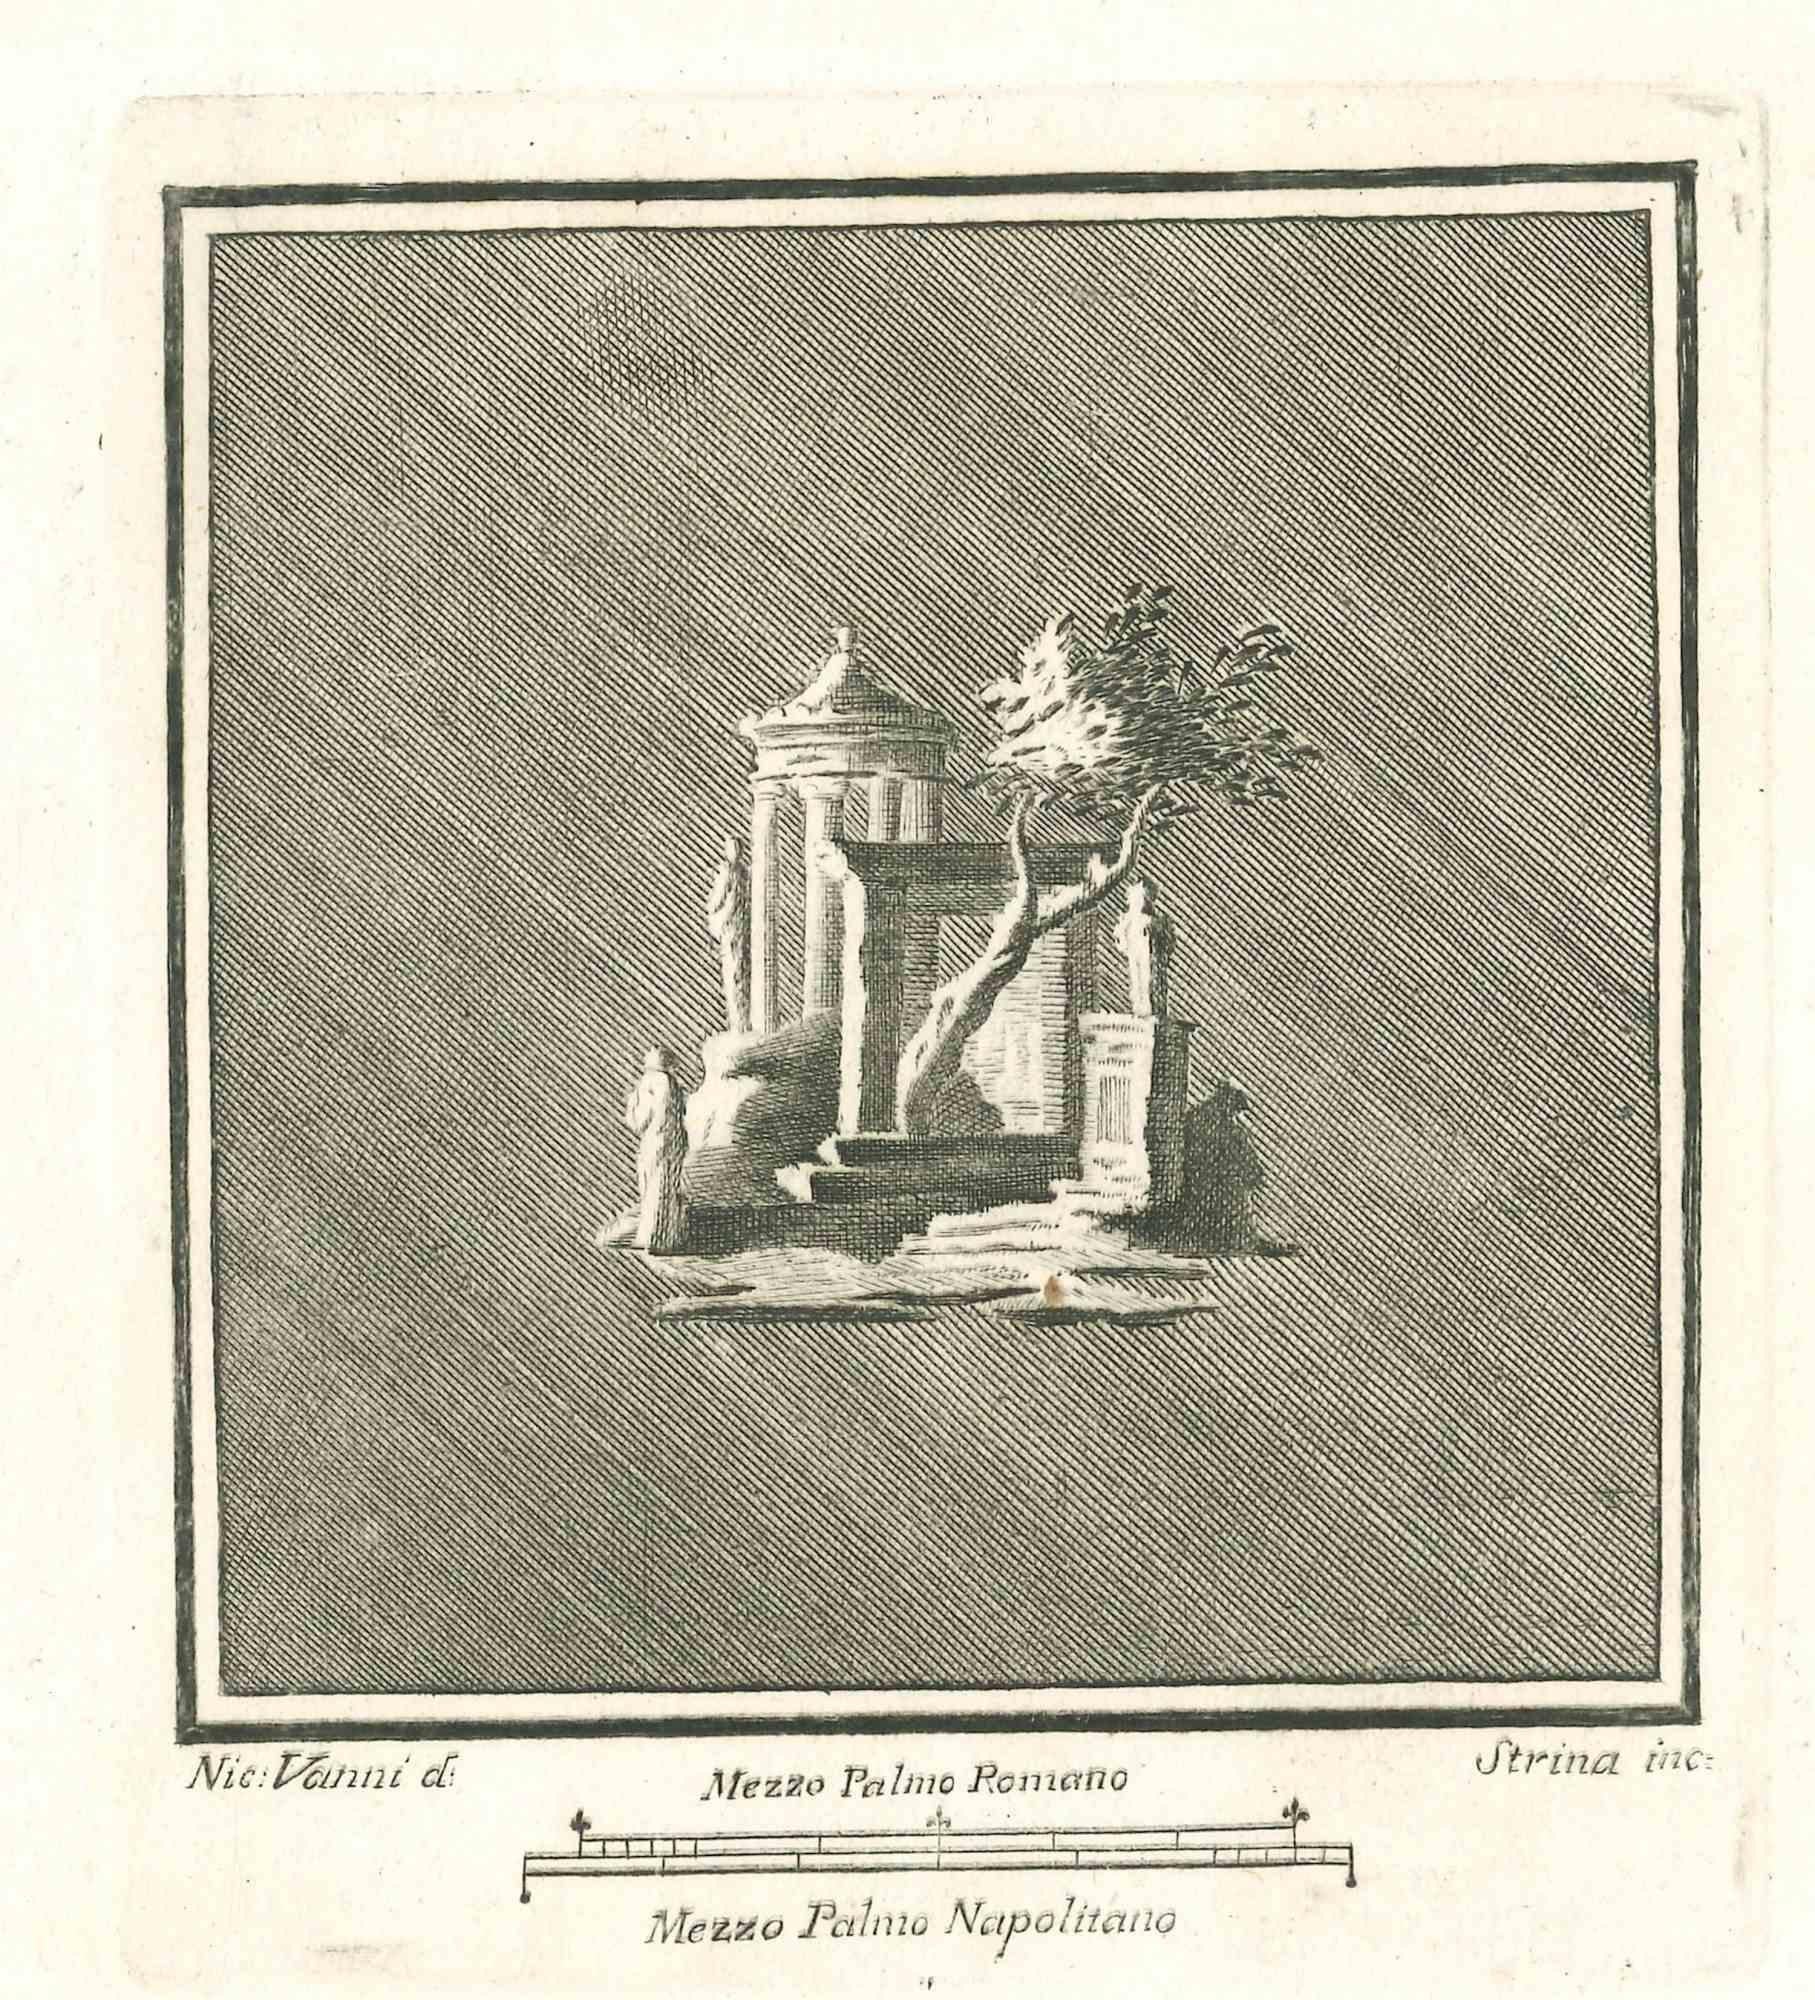 Paysage antique de la série "Antiquités d'Herculanum", est une gravure sur papier réalisée par Fernando Strina au 18ème siècle.

Signé sur la plaque.

Bonnes conditions.

 

La gravure appartient à la suite d'estampes "Antiquités d'Herculanum